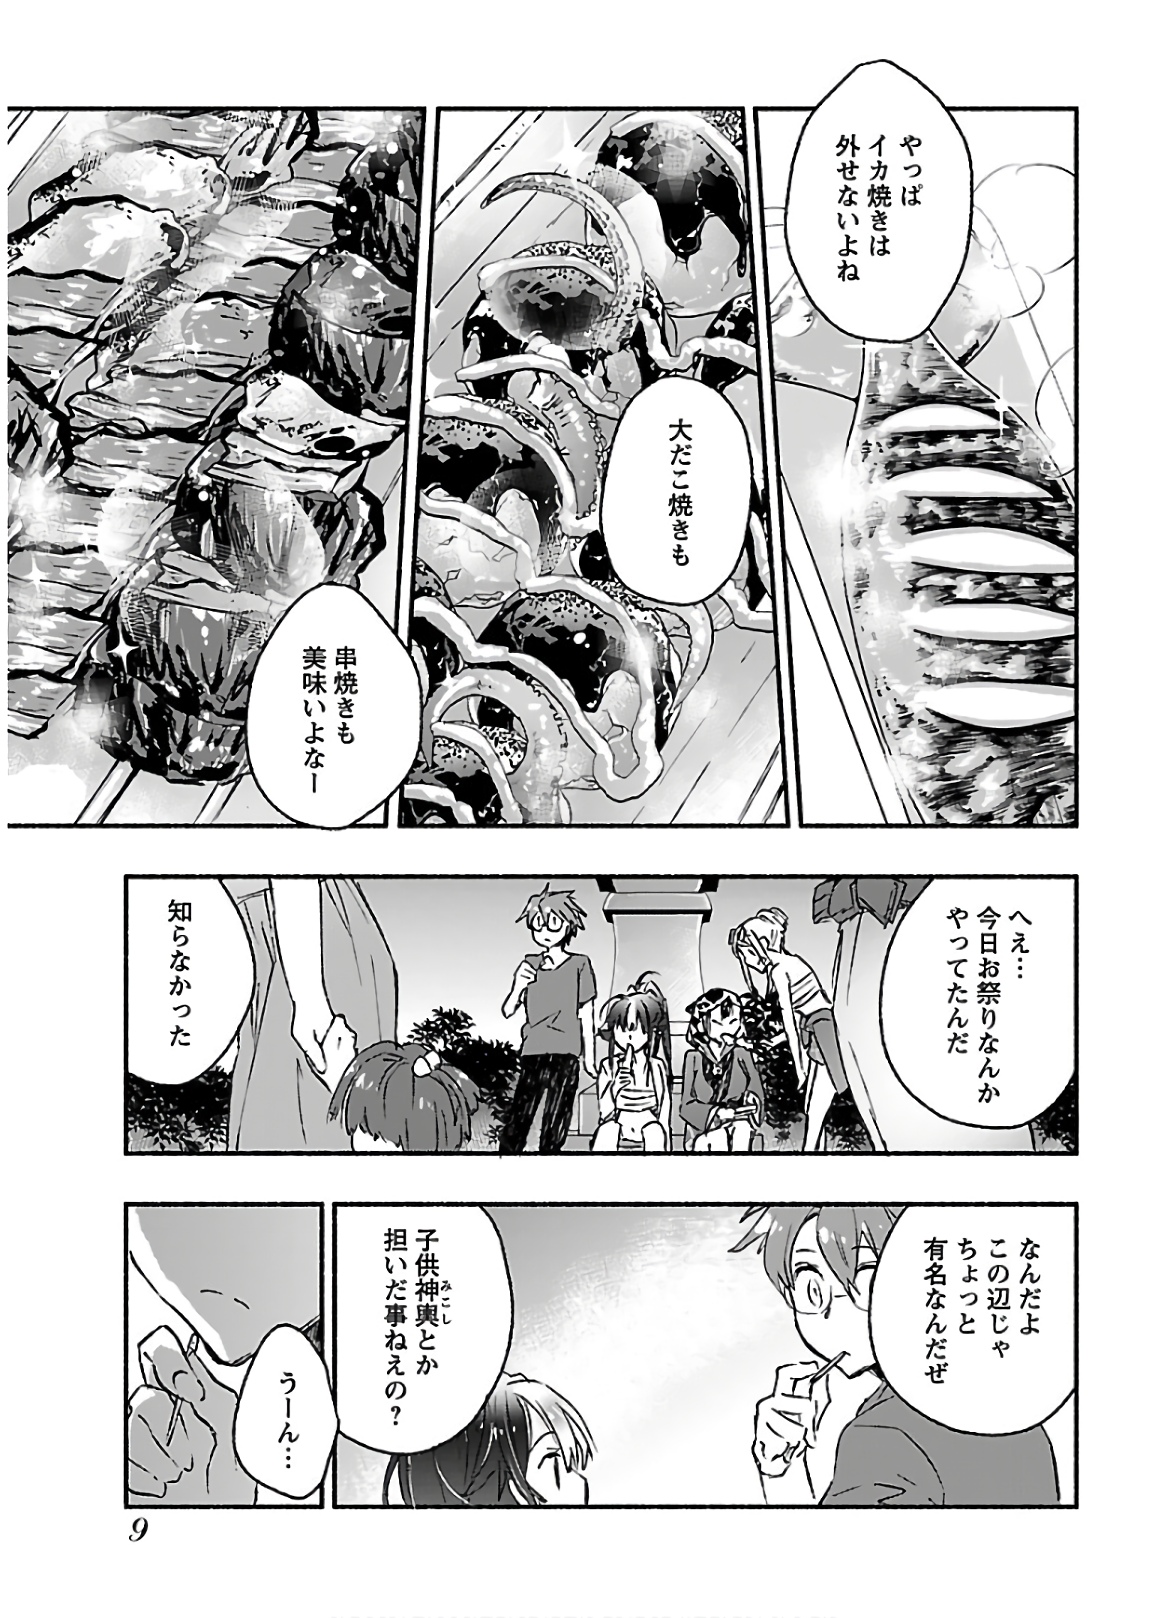 [James Hotate] Yankii musume ni natsukarete kotoshi mo juken ni shippai shisou desu vol.3 page 11 full